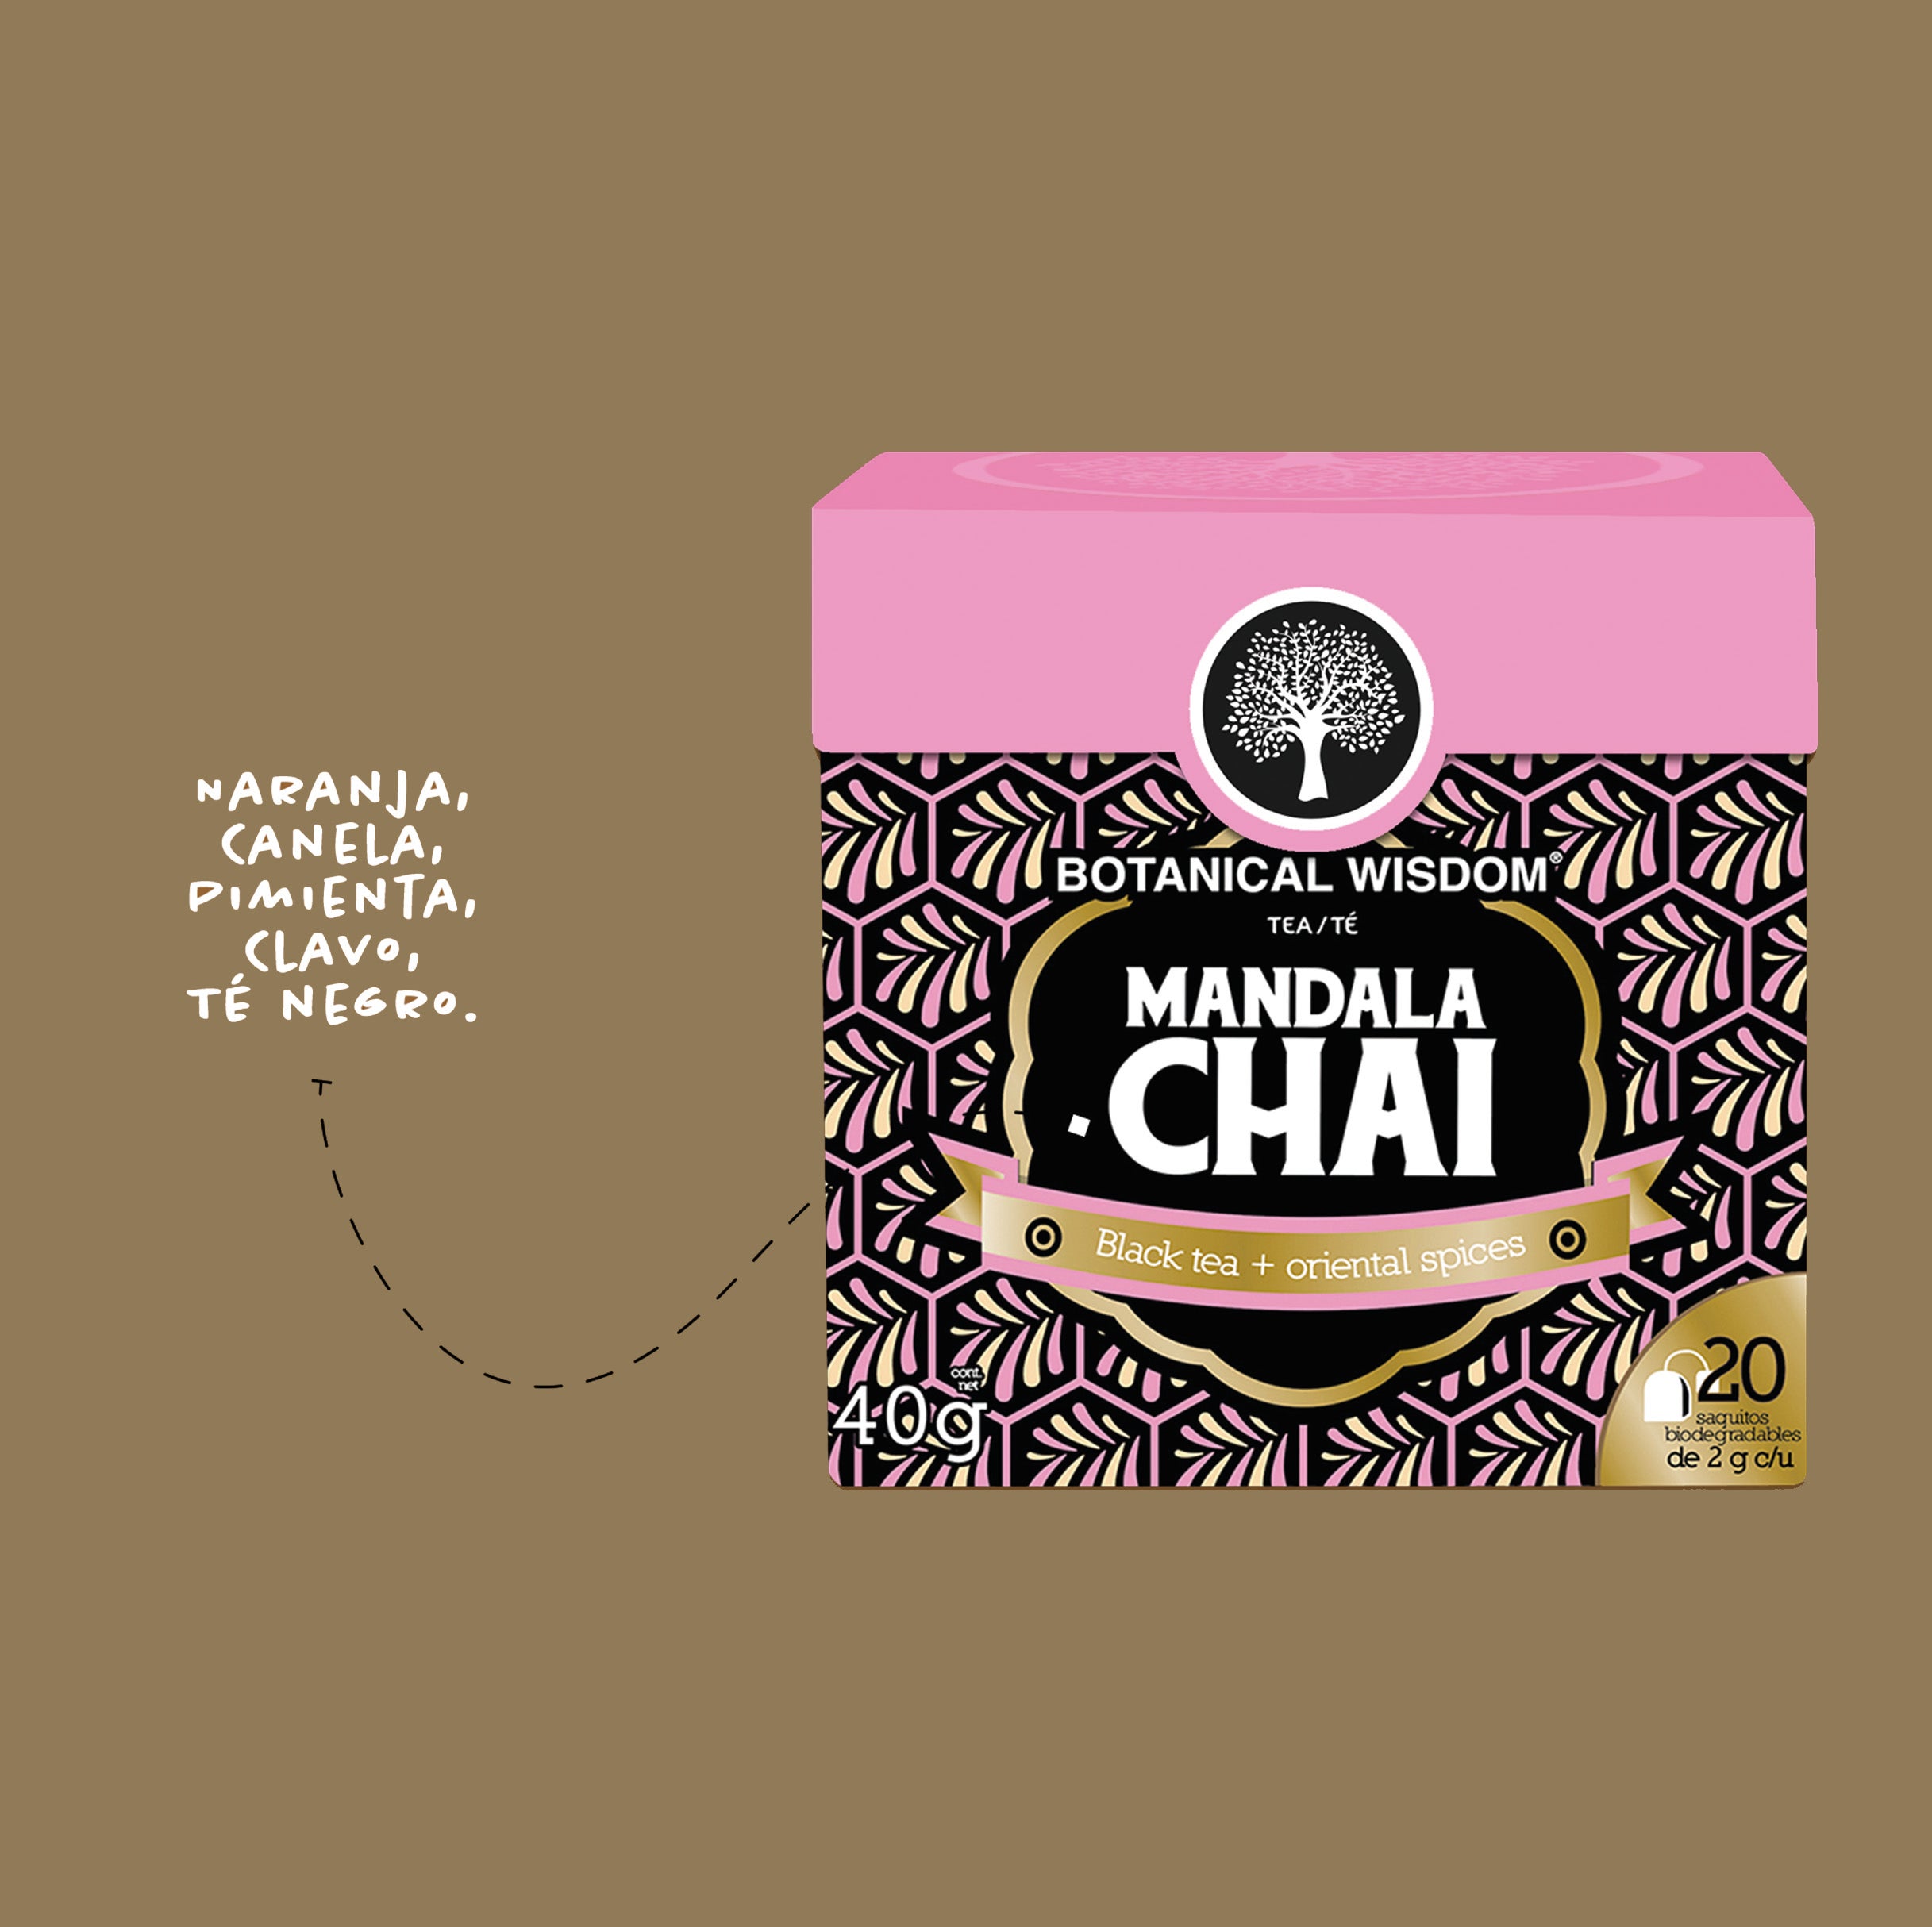 Mandala Chai